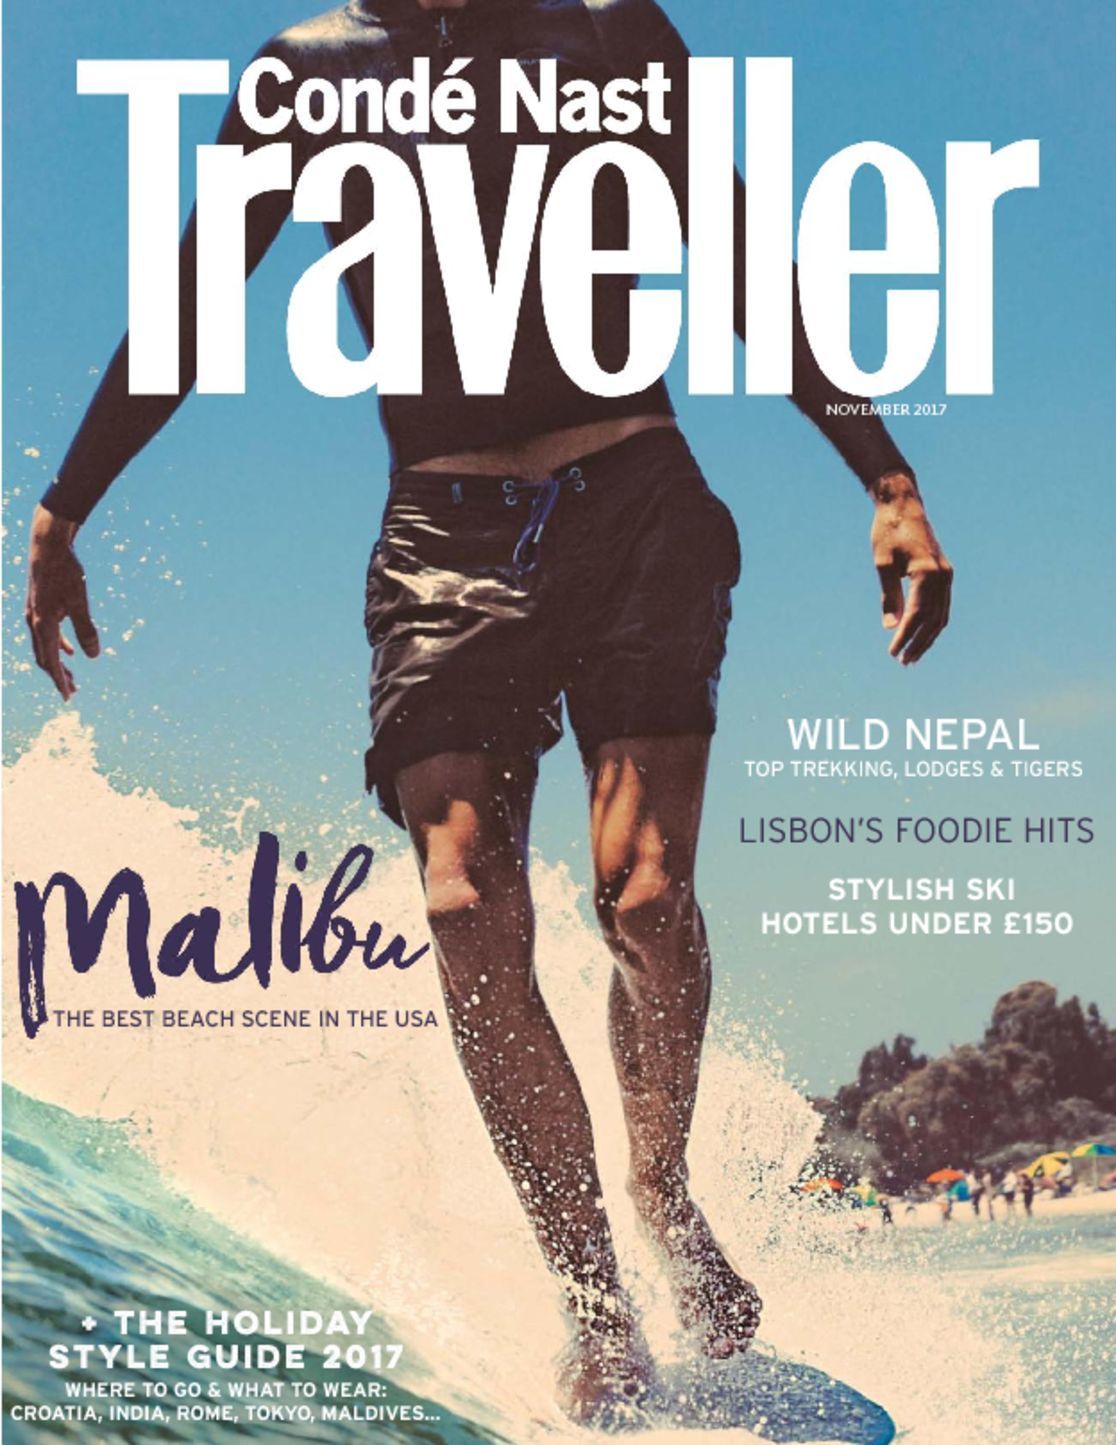 traveller magazine conde nast